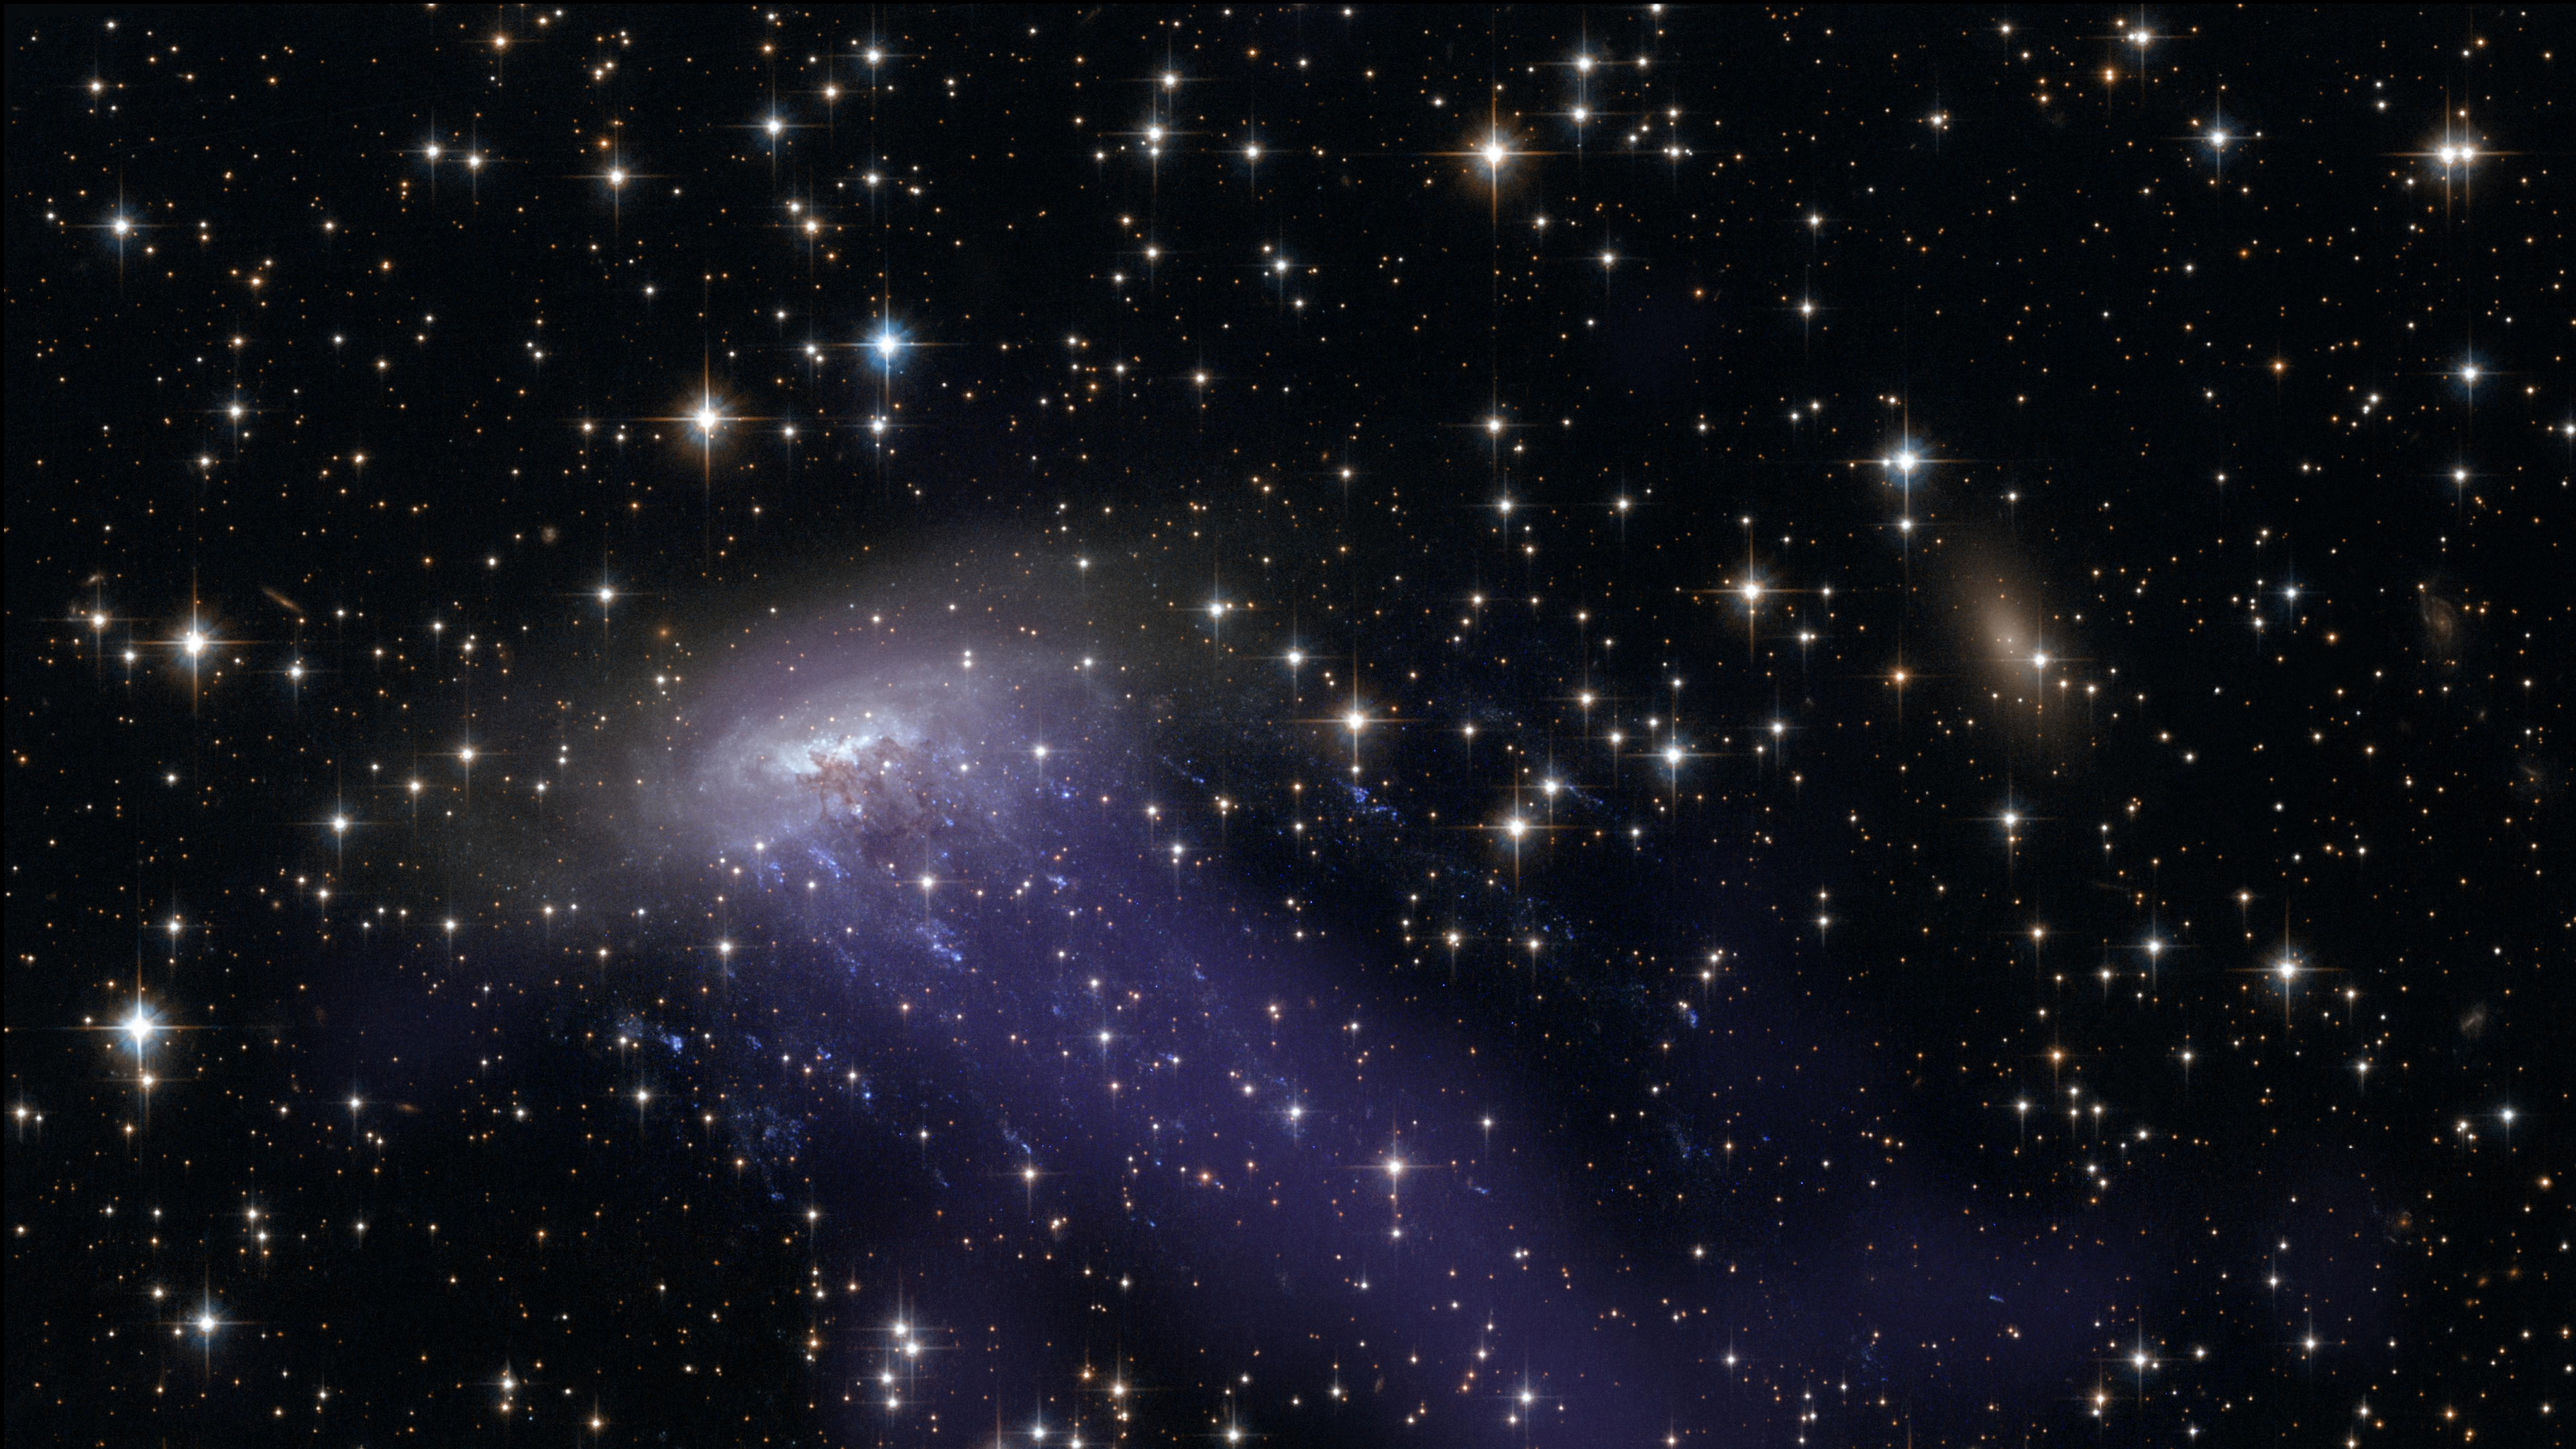 哈勃太空望远镜, 螺旋星系, 银河系的集群, 外层空间, 气氛 壁纸 3840x2160 允许